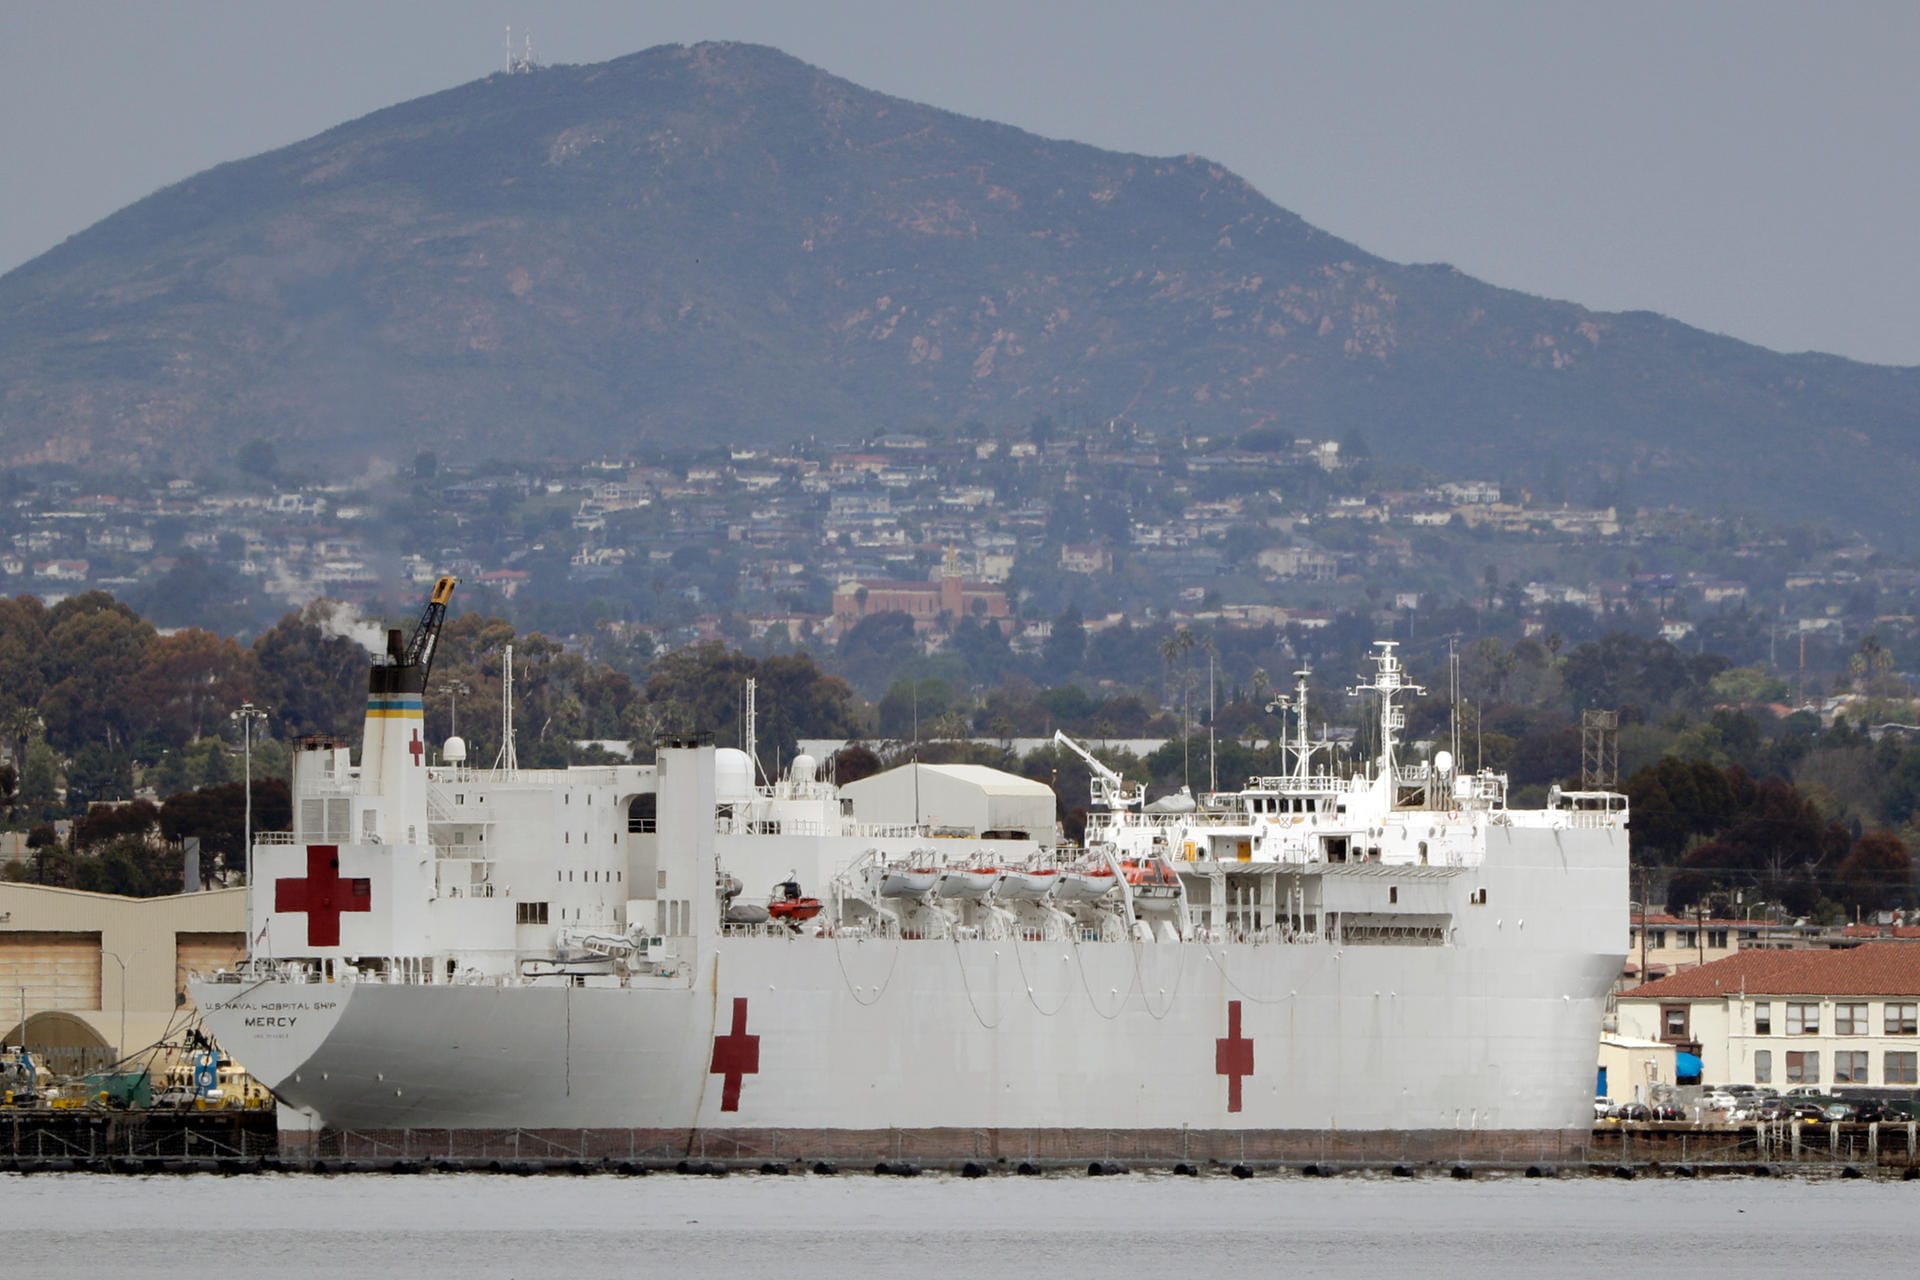 Das Spitalschiff "USNS Comfort" der US-Navy mit rund 1000 Kabinen ankert aktuell im Hafen von San Diego. Donald Trump wird es wahrscheinlich auch nach Los Angeles schicken, um bei der Corona-Pandemie zu helfen.